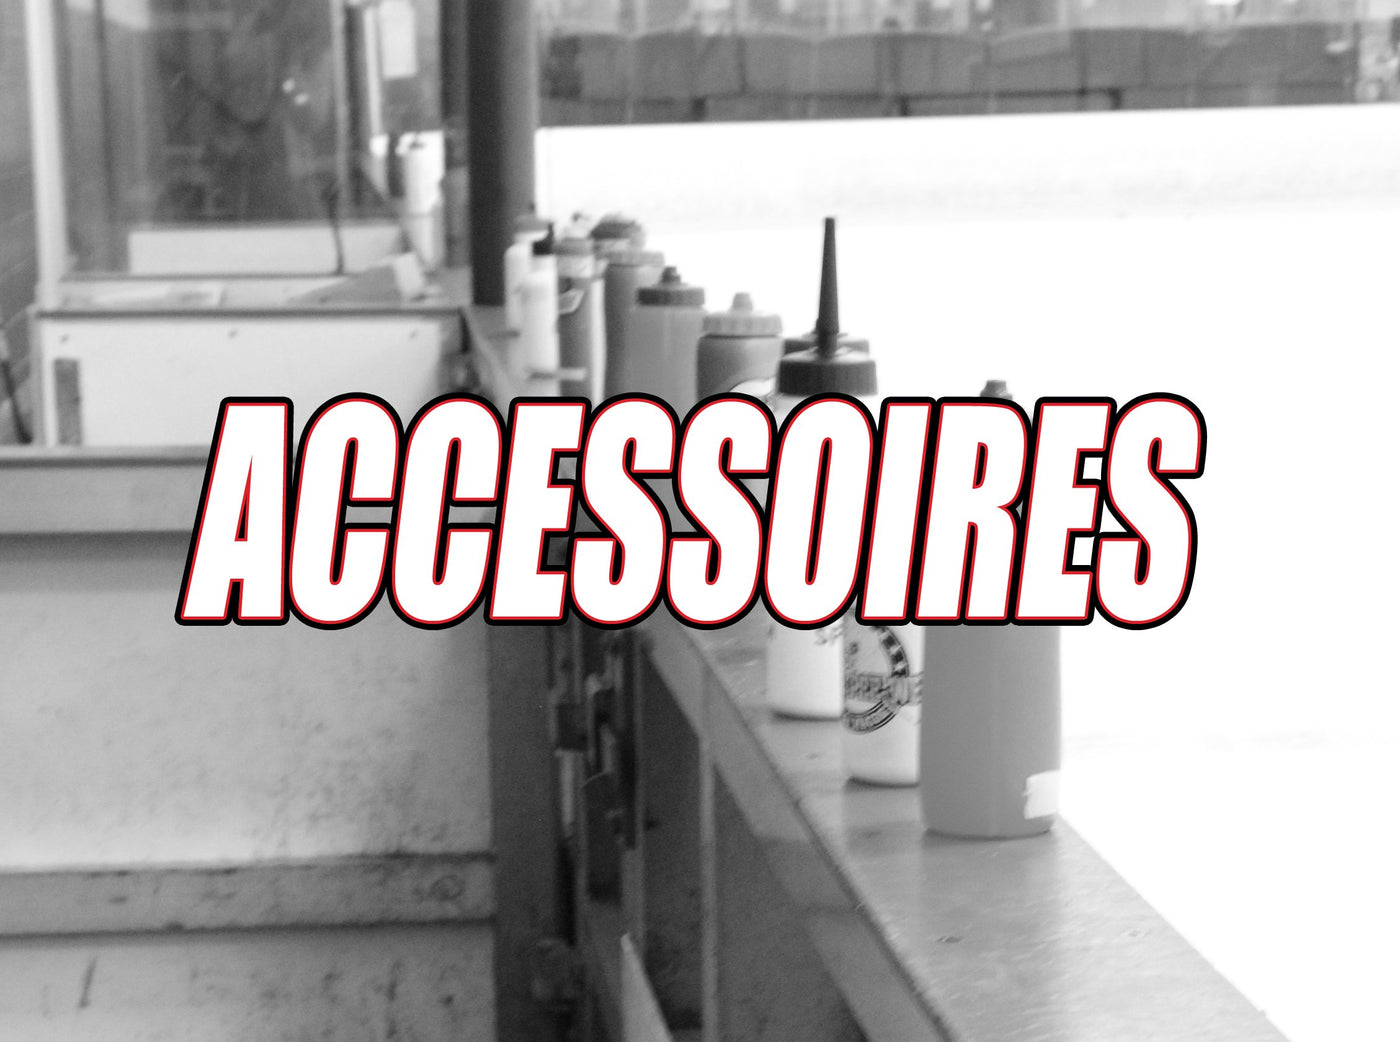 Hockey Accessoires